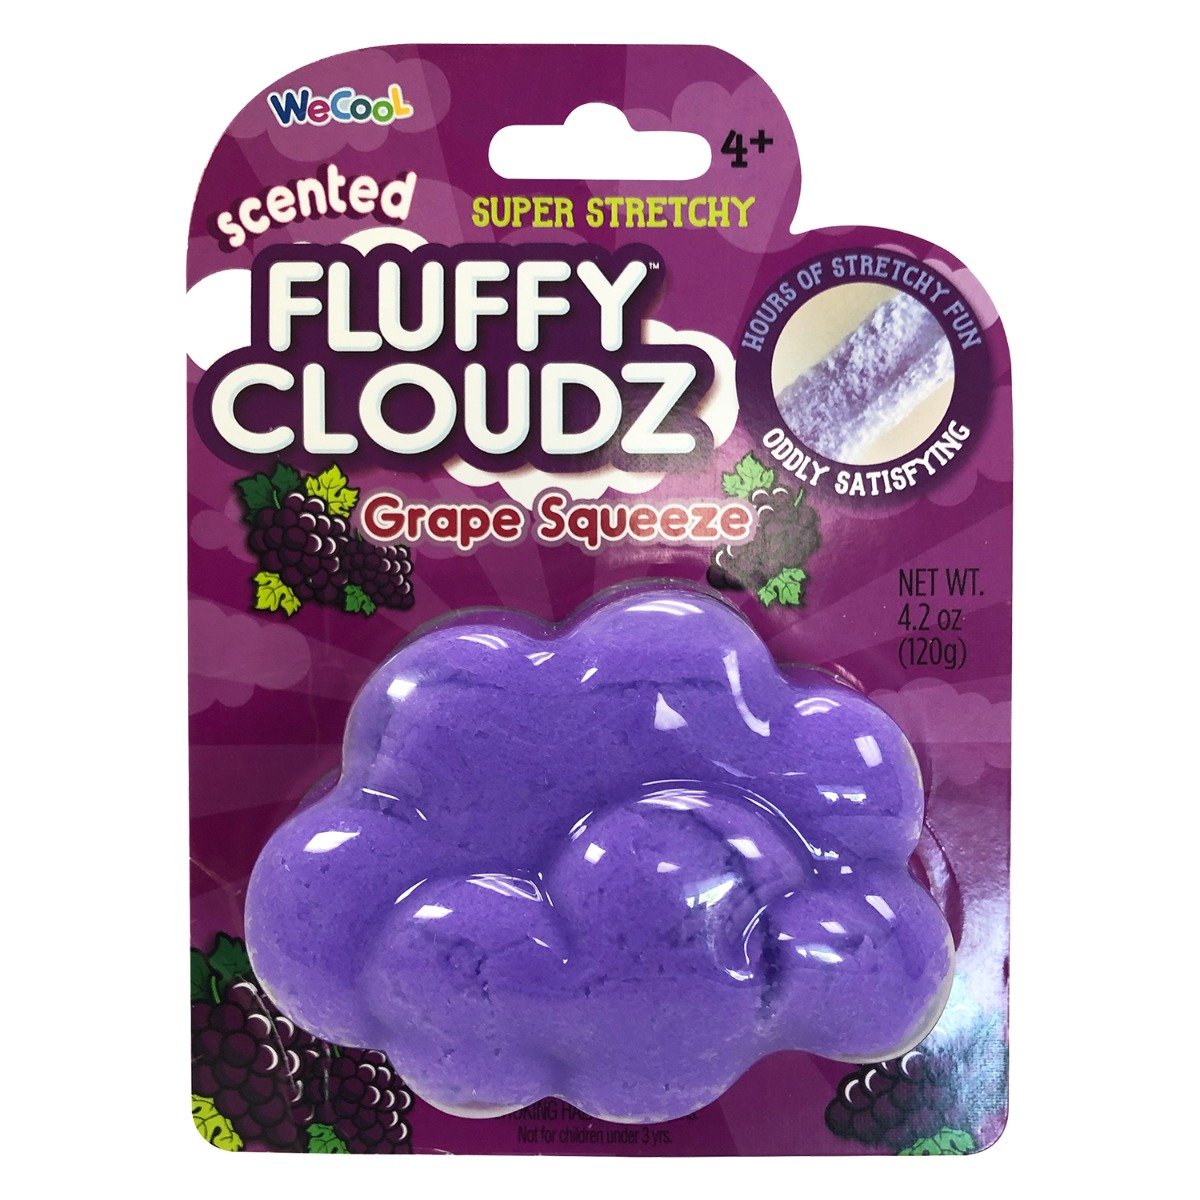 Slime parfumat cu surpriza Compound Kings – Fluffy Cloudz, Grape Squeeze, 120 g Compound Kings imagine 2022